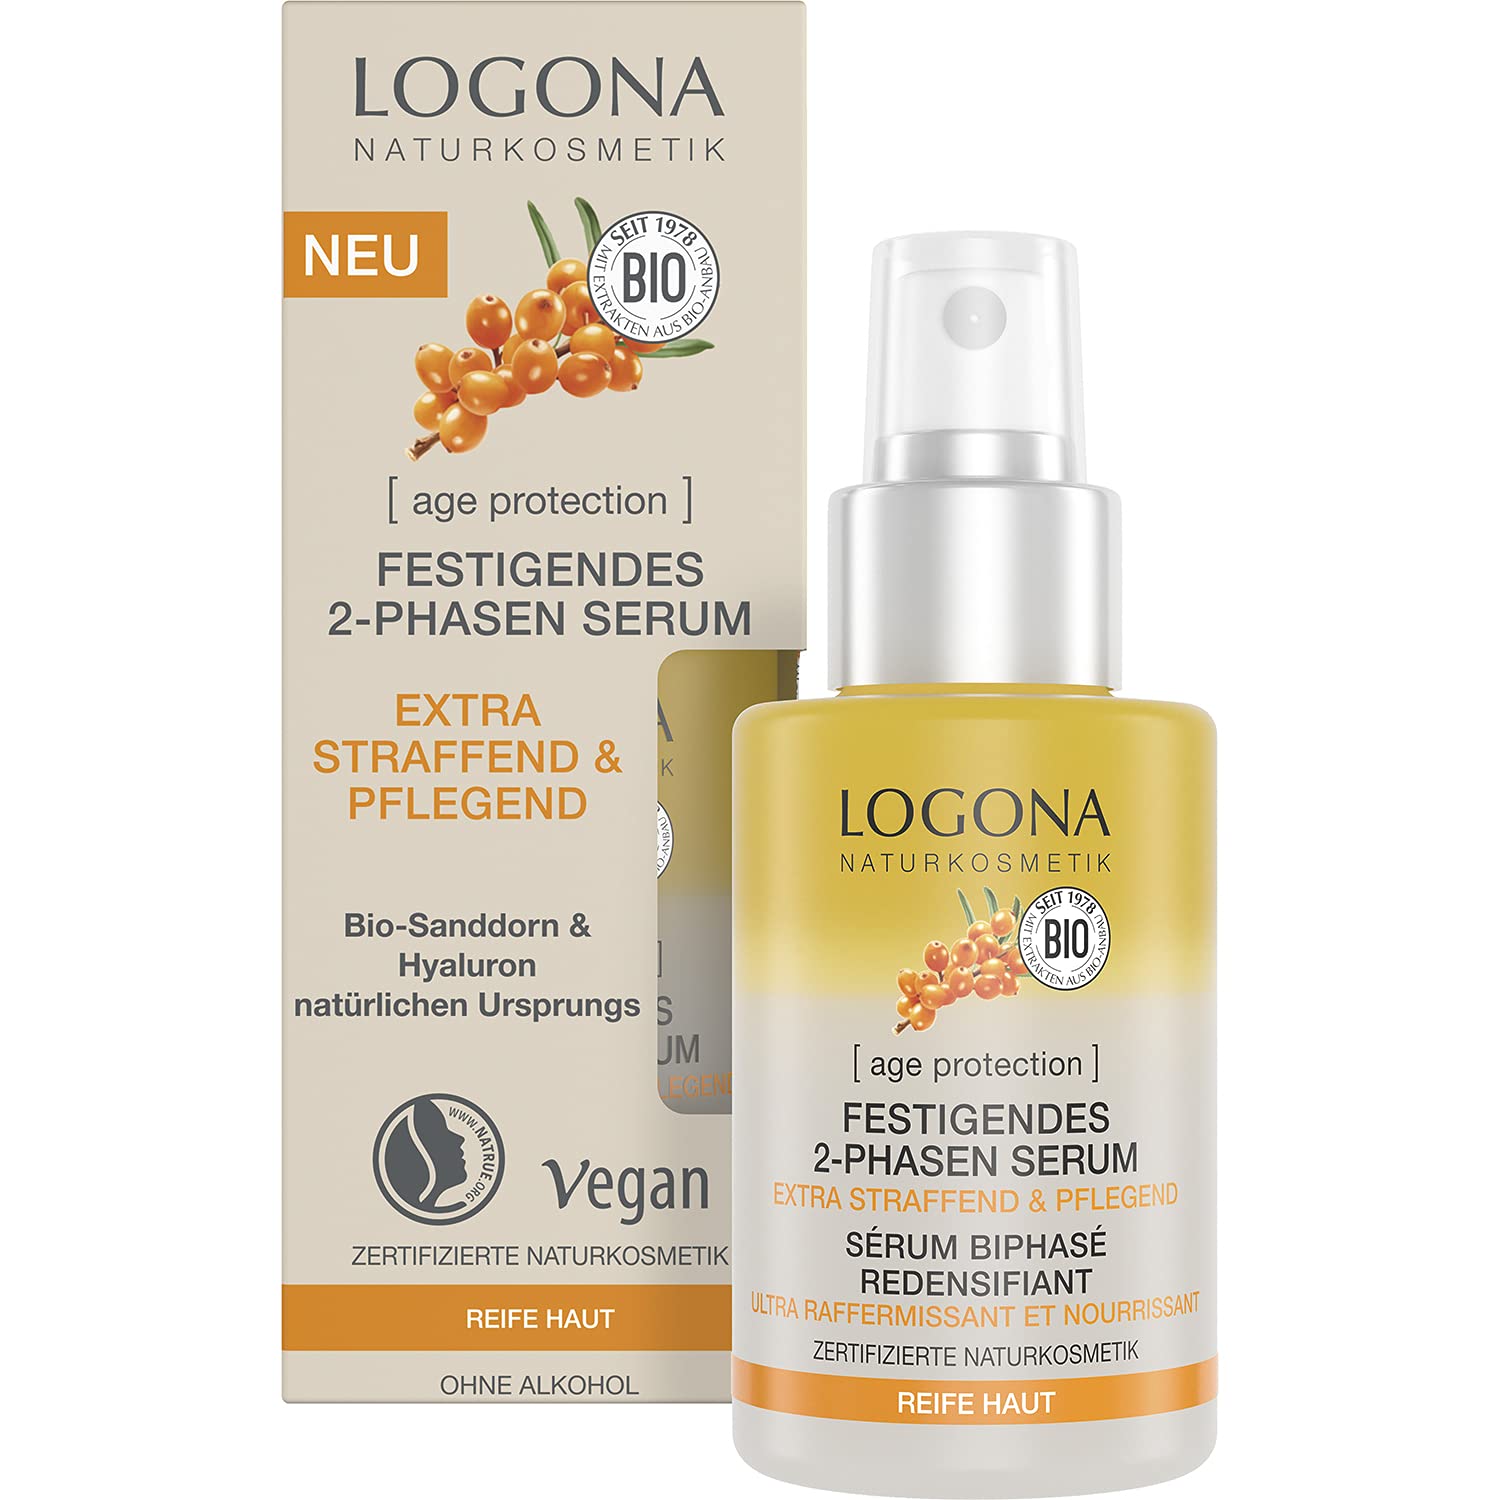 LOGONA Naturkosmetik Anti-Aging Gesichtsserum für reife Haut, Veganes und festigendes 2 Phasen Serum, Mit Hyaluron und Bio-Sanddorn, age protection, 30 ml